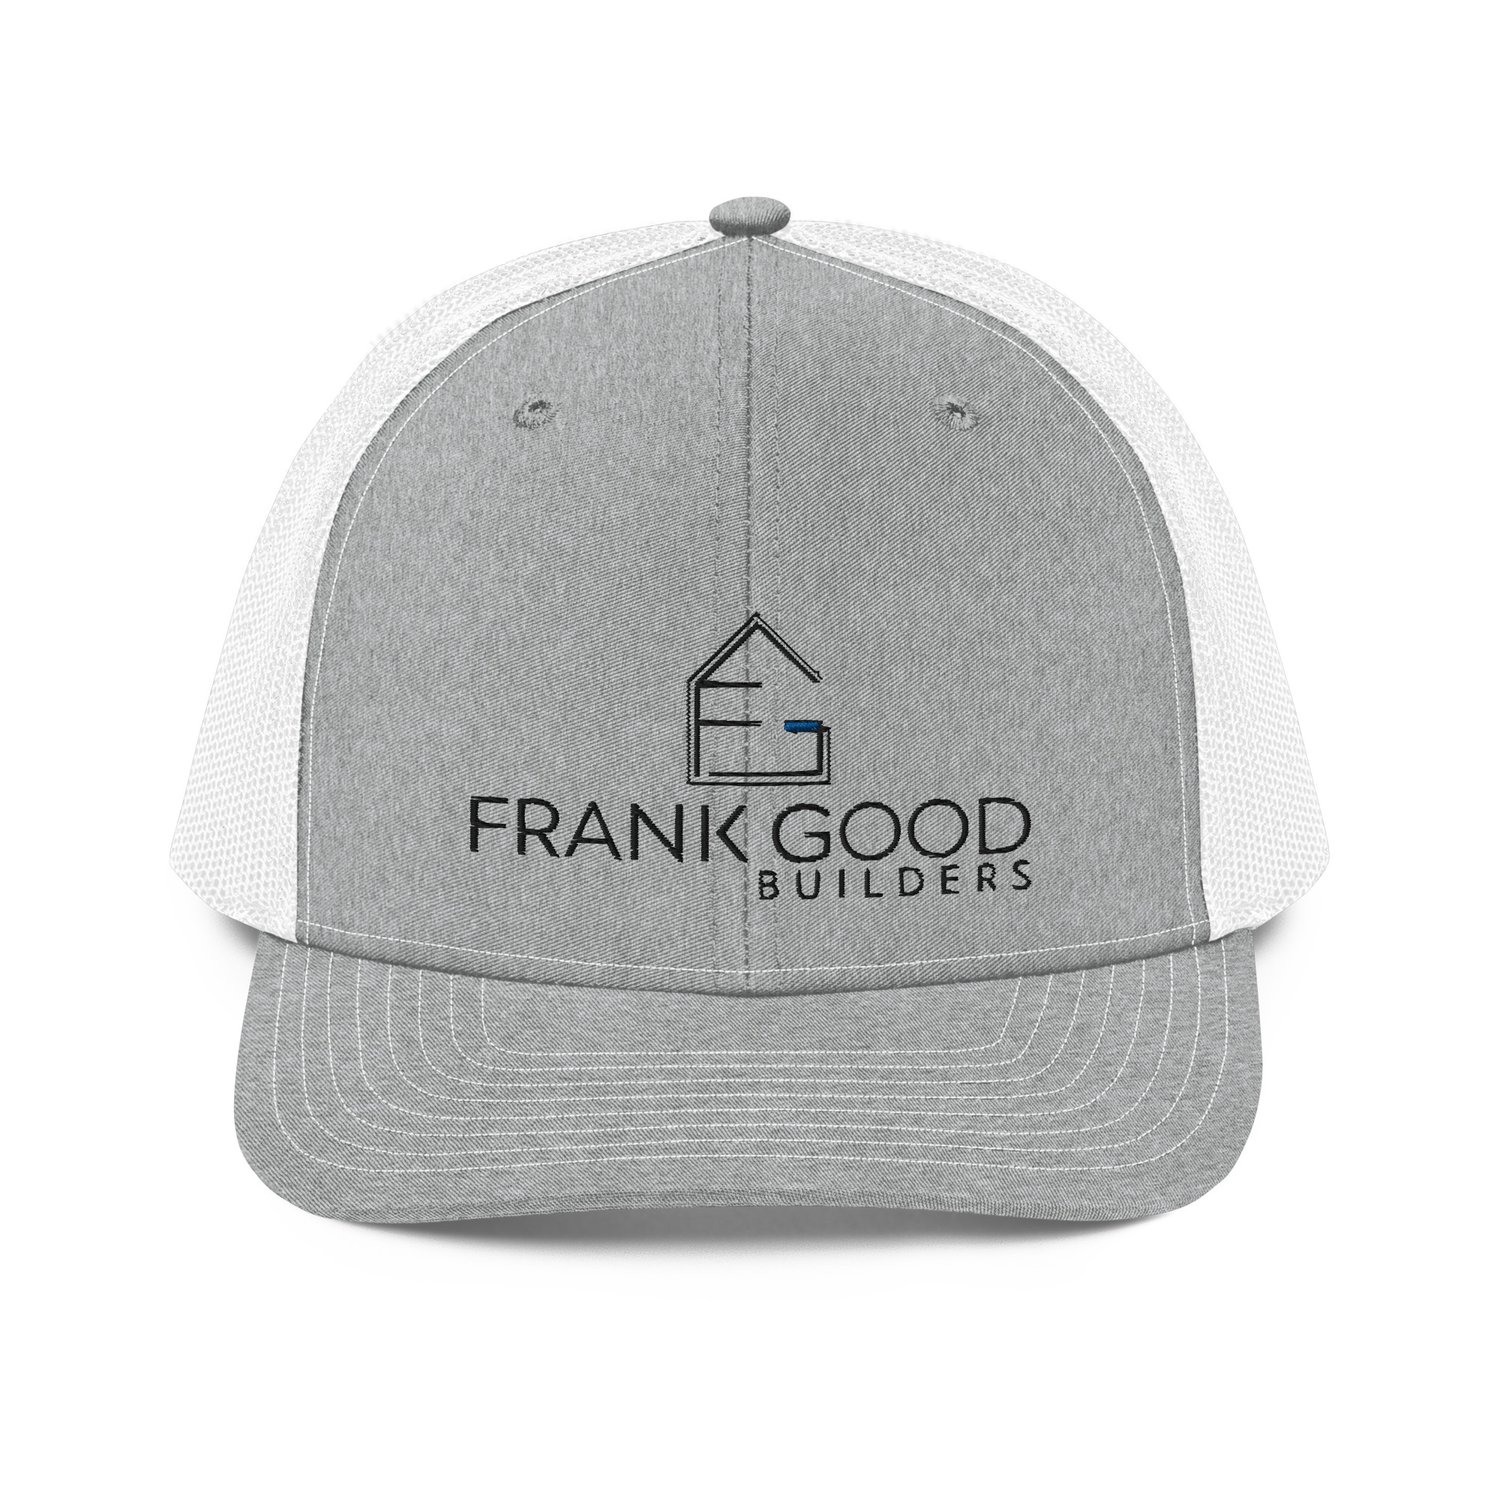 Frank Good Builders Trucker Cap